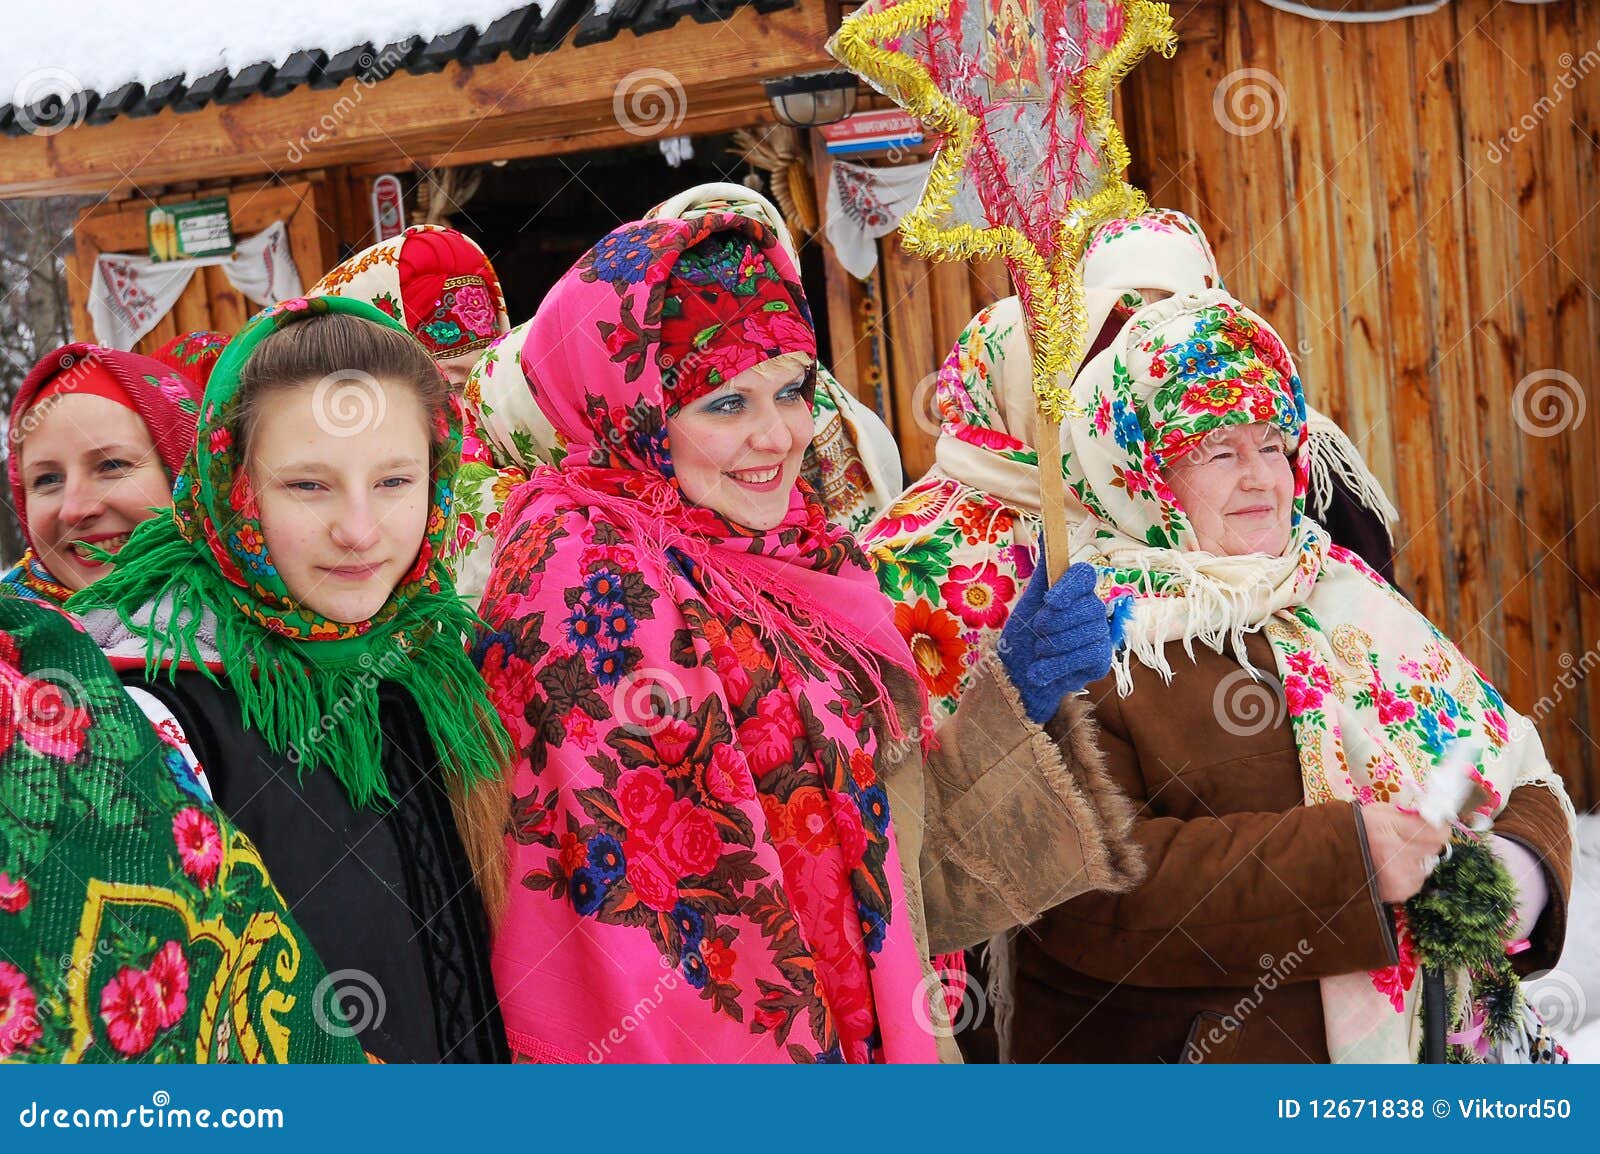 Immagini Natale Ucraino.Natale Ucraino Fotografia Stock Editoriale Immagine Di Decorazione 12671838